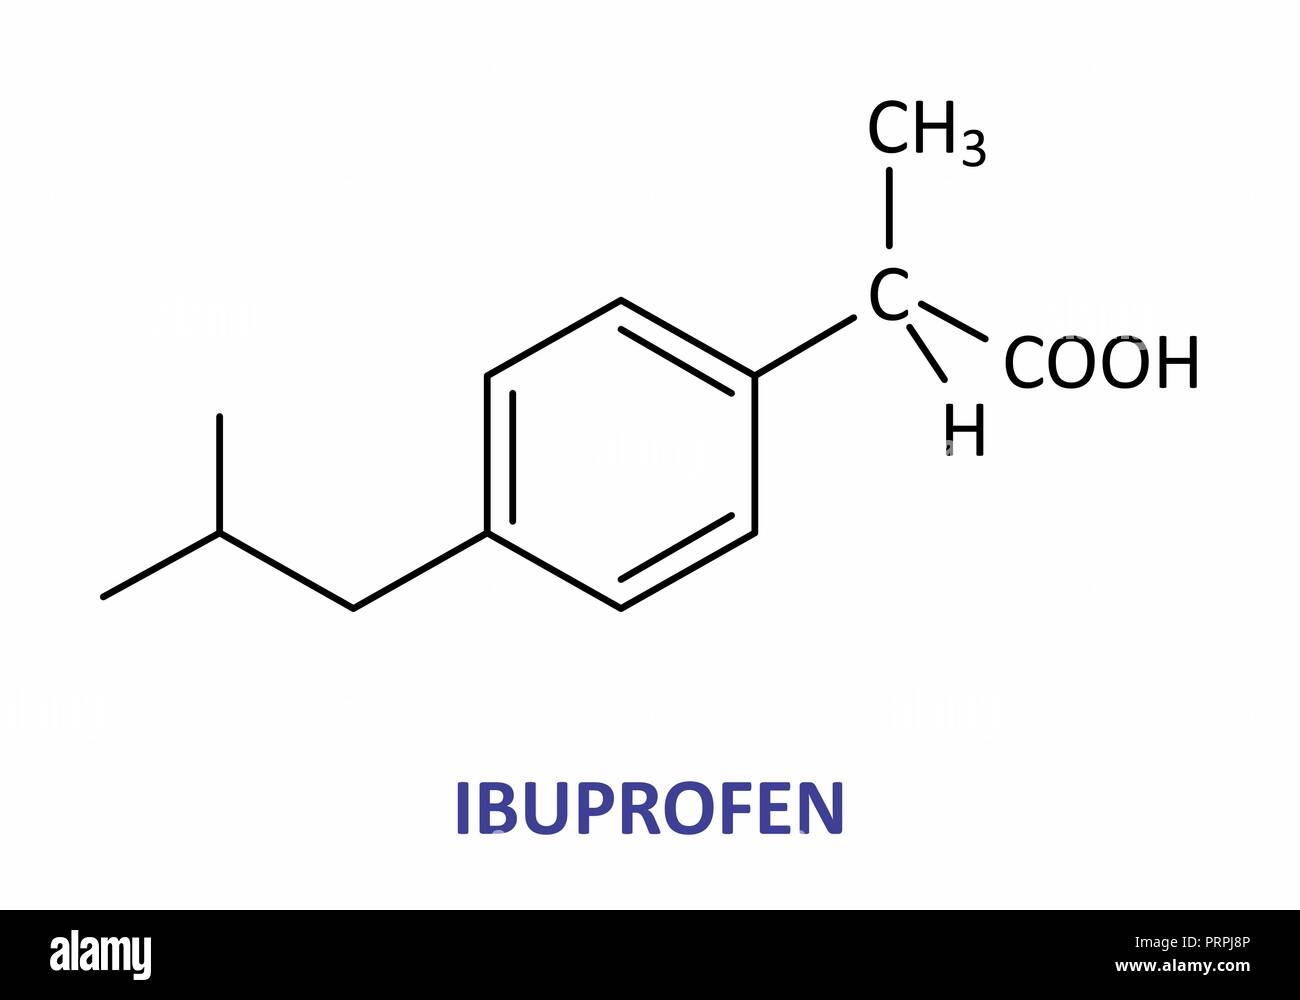 Illustrazione della formula strutturale di ibuprofen Illustrazione Vettoriale